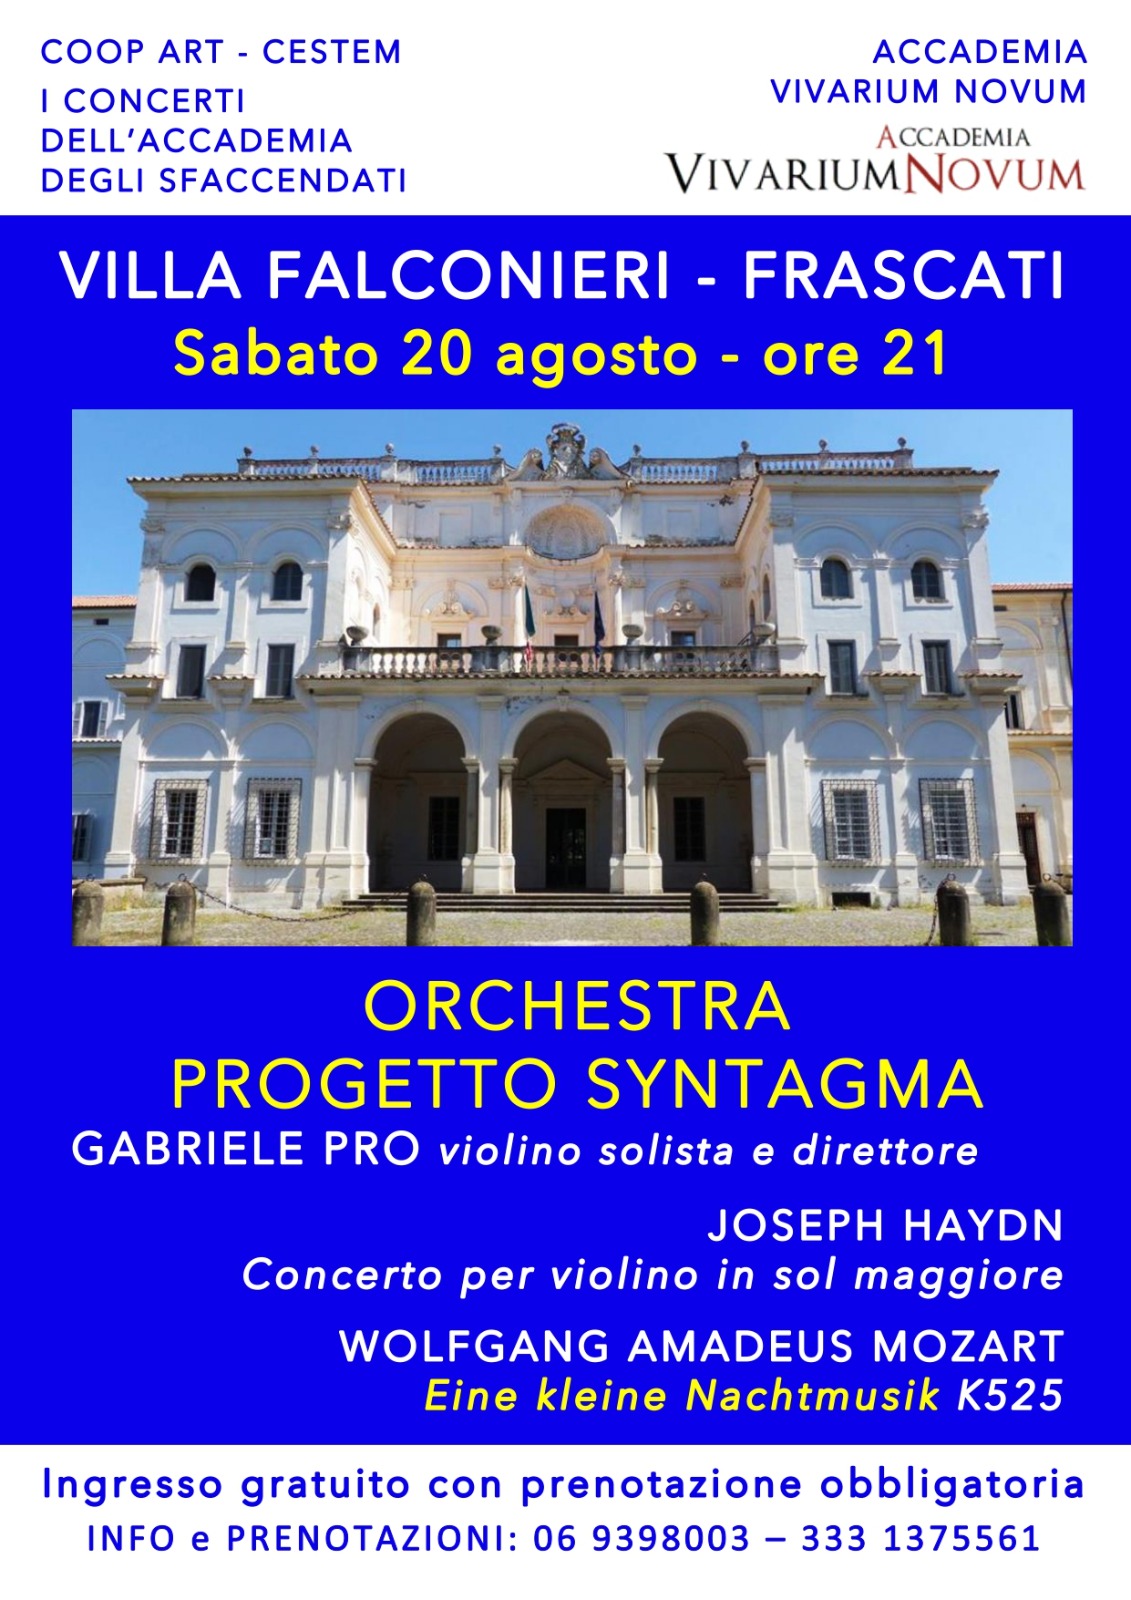 Mozart in Villa Falconieri a Frascati per l’Accademia Vivarium Novum con “I Concerti dell’Accademia degli Sfaccendati”